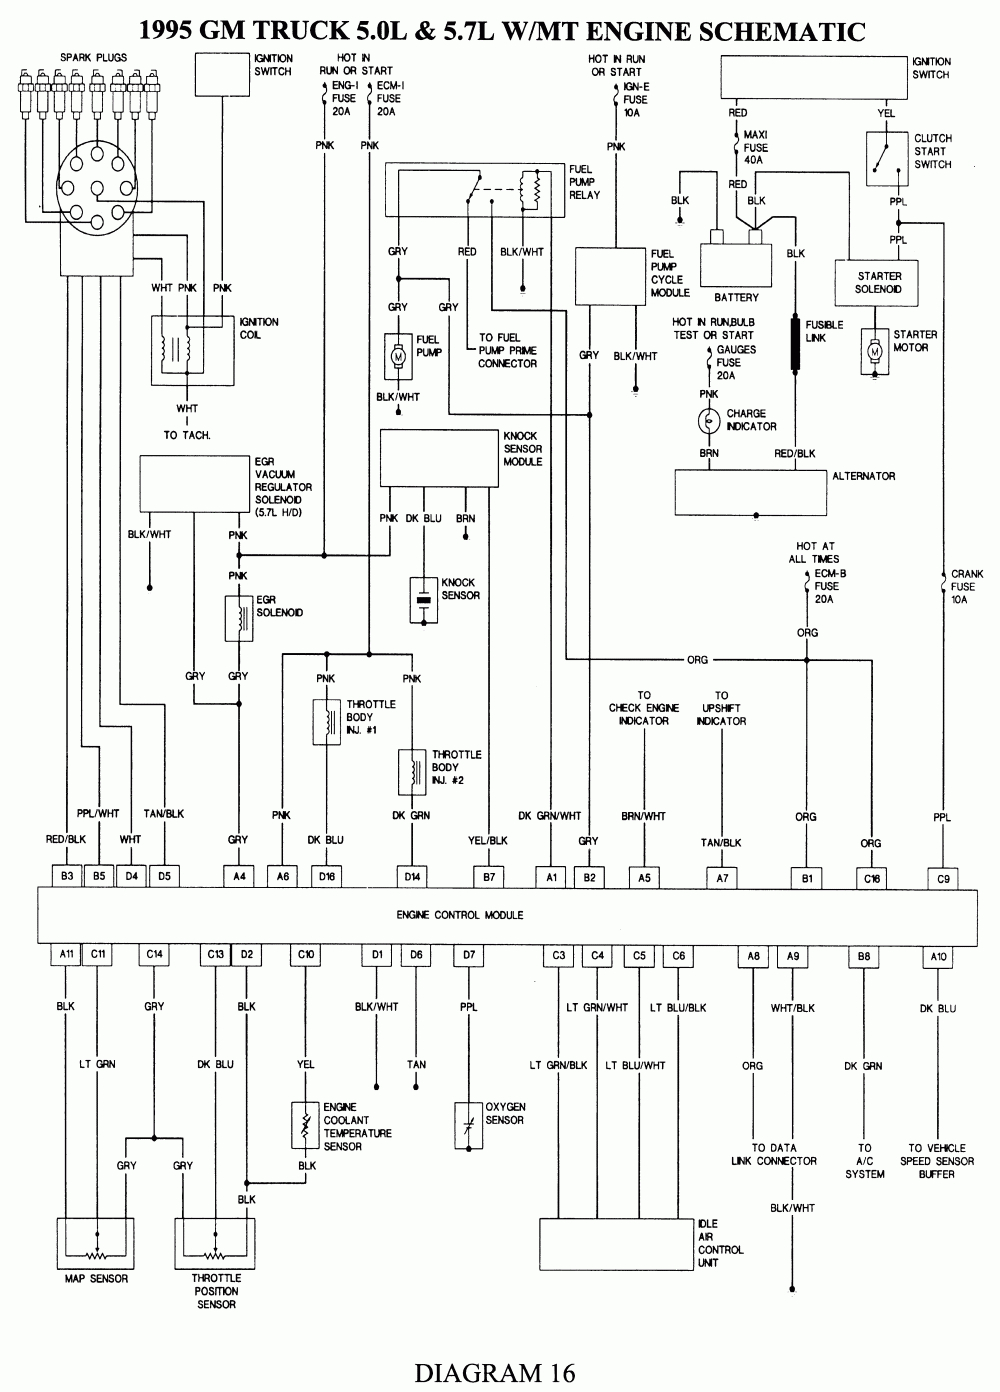 Repair Guides | Wiring Diagrams | Wiring Diagrams | Autozone - 1998 Chevy Silverado Wiring Diagram